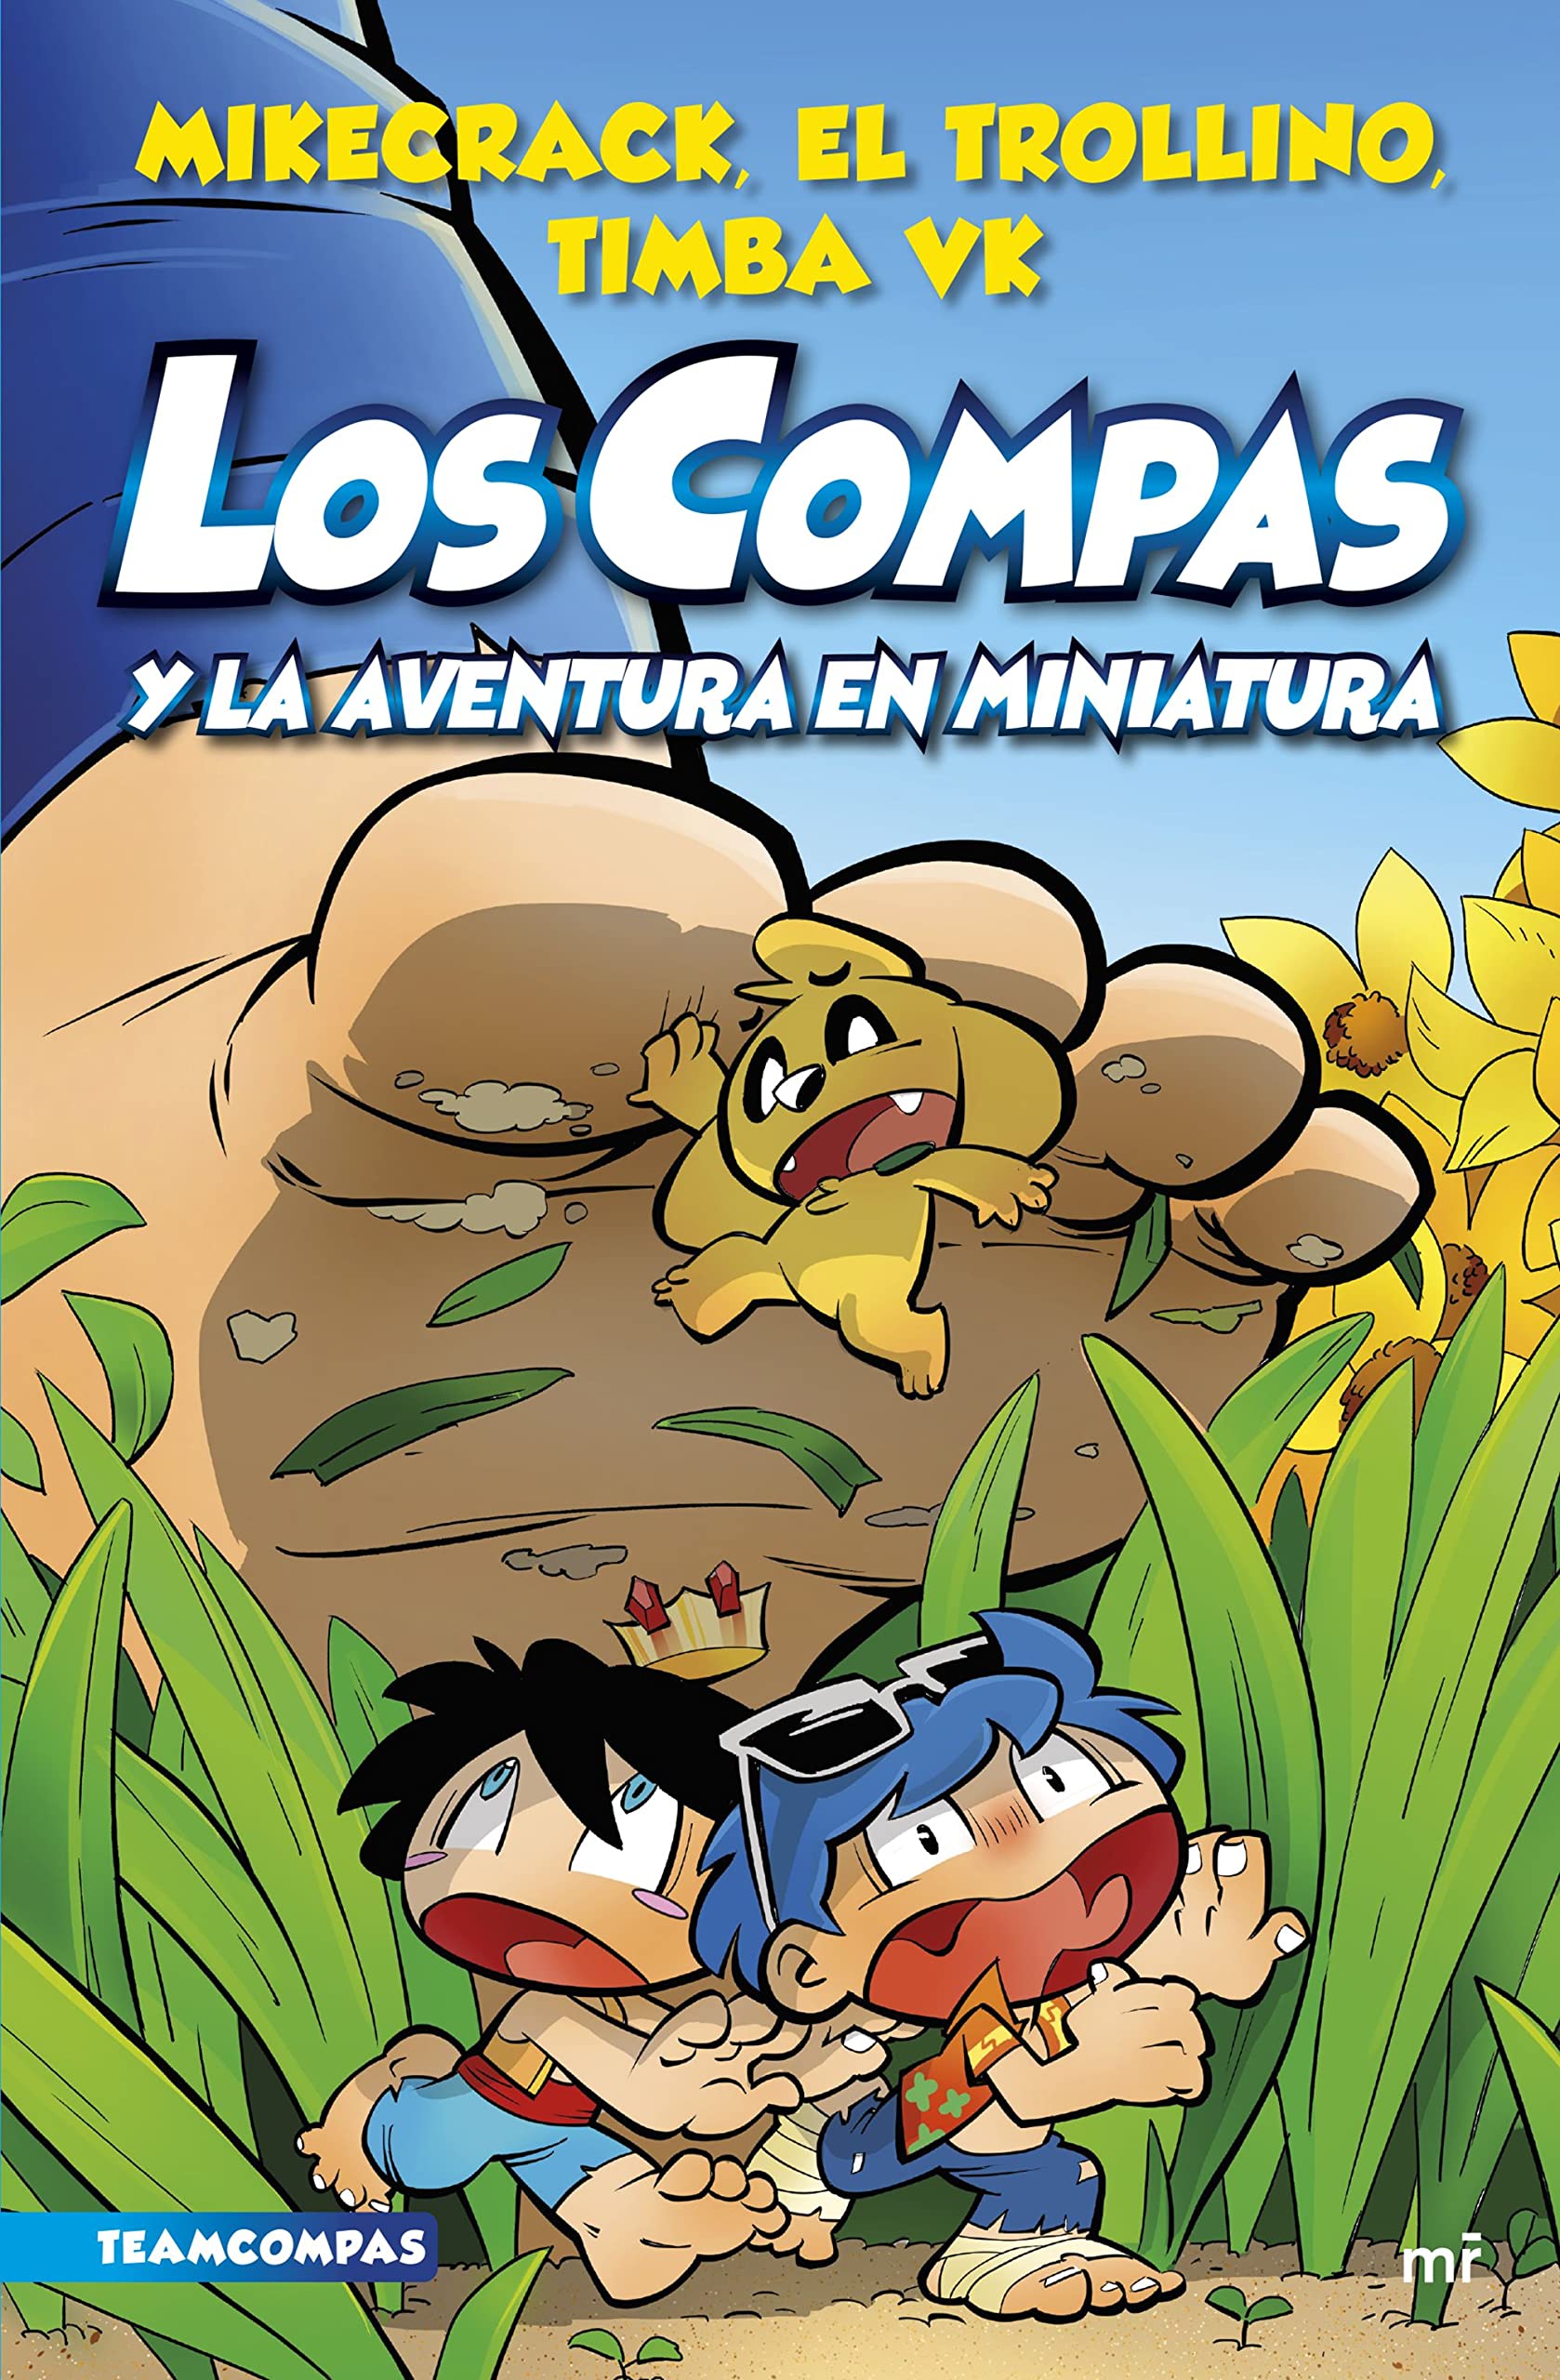 Libro: Los Compas y la Aventura en Miniatura - Compas 8 por Mikecrack, El Trollino y Timba Vk